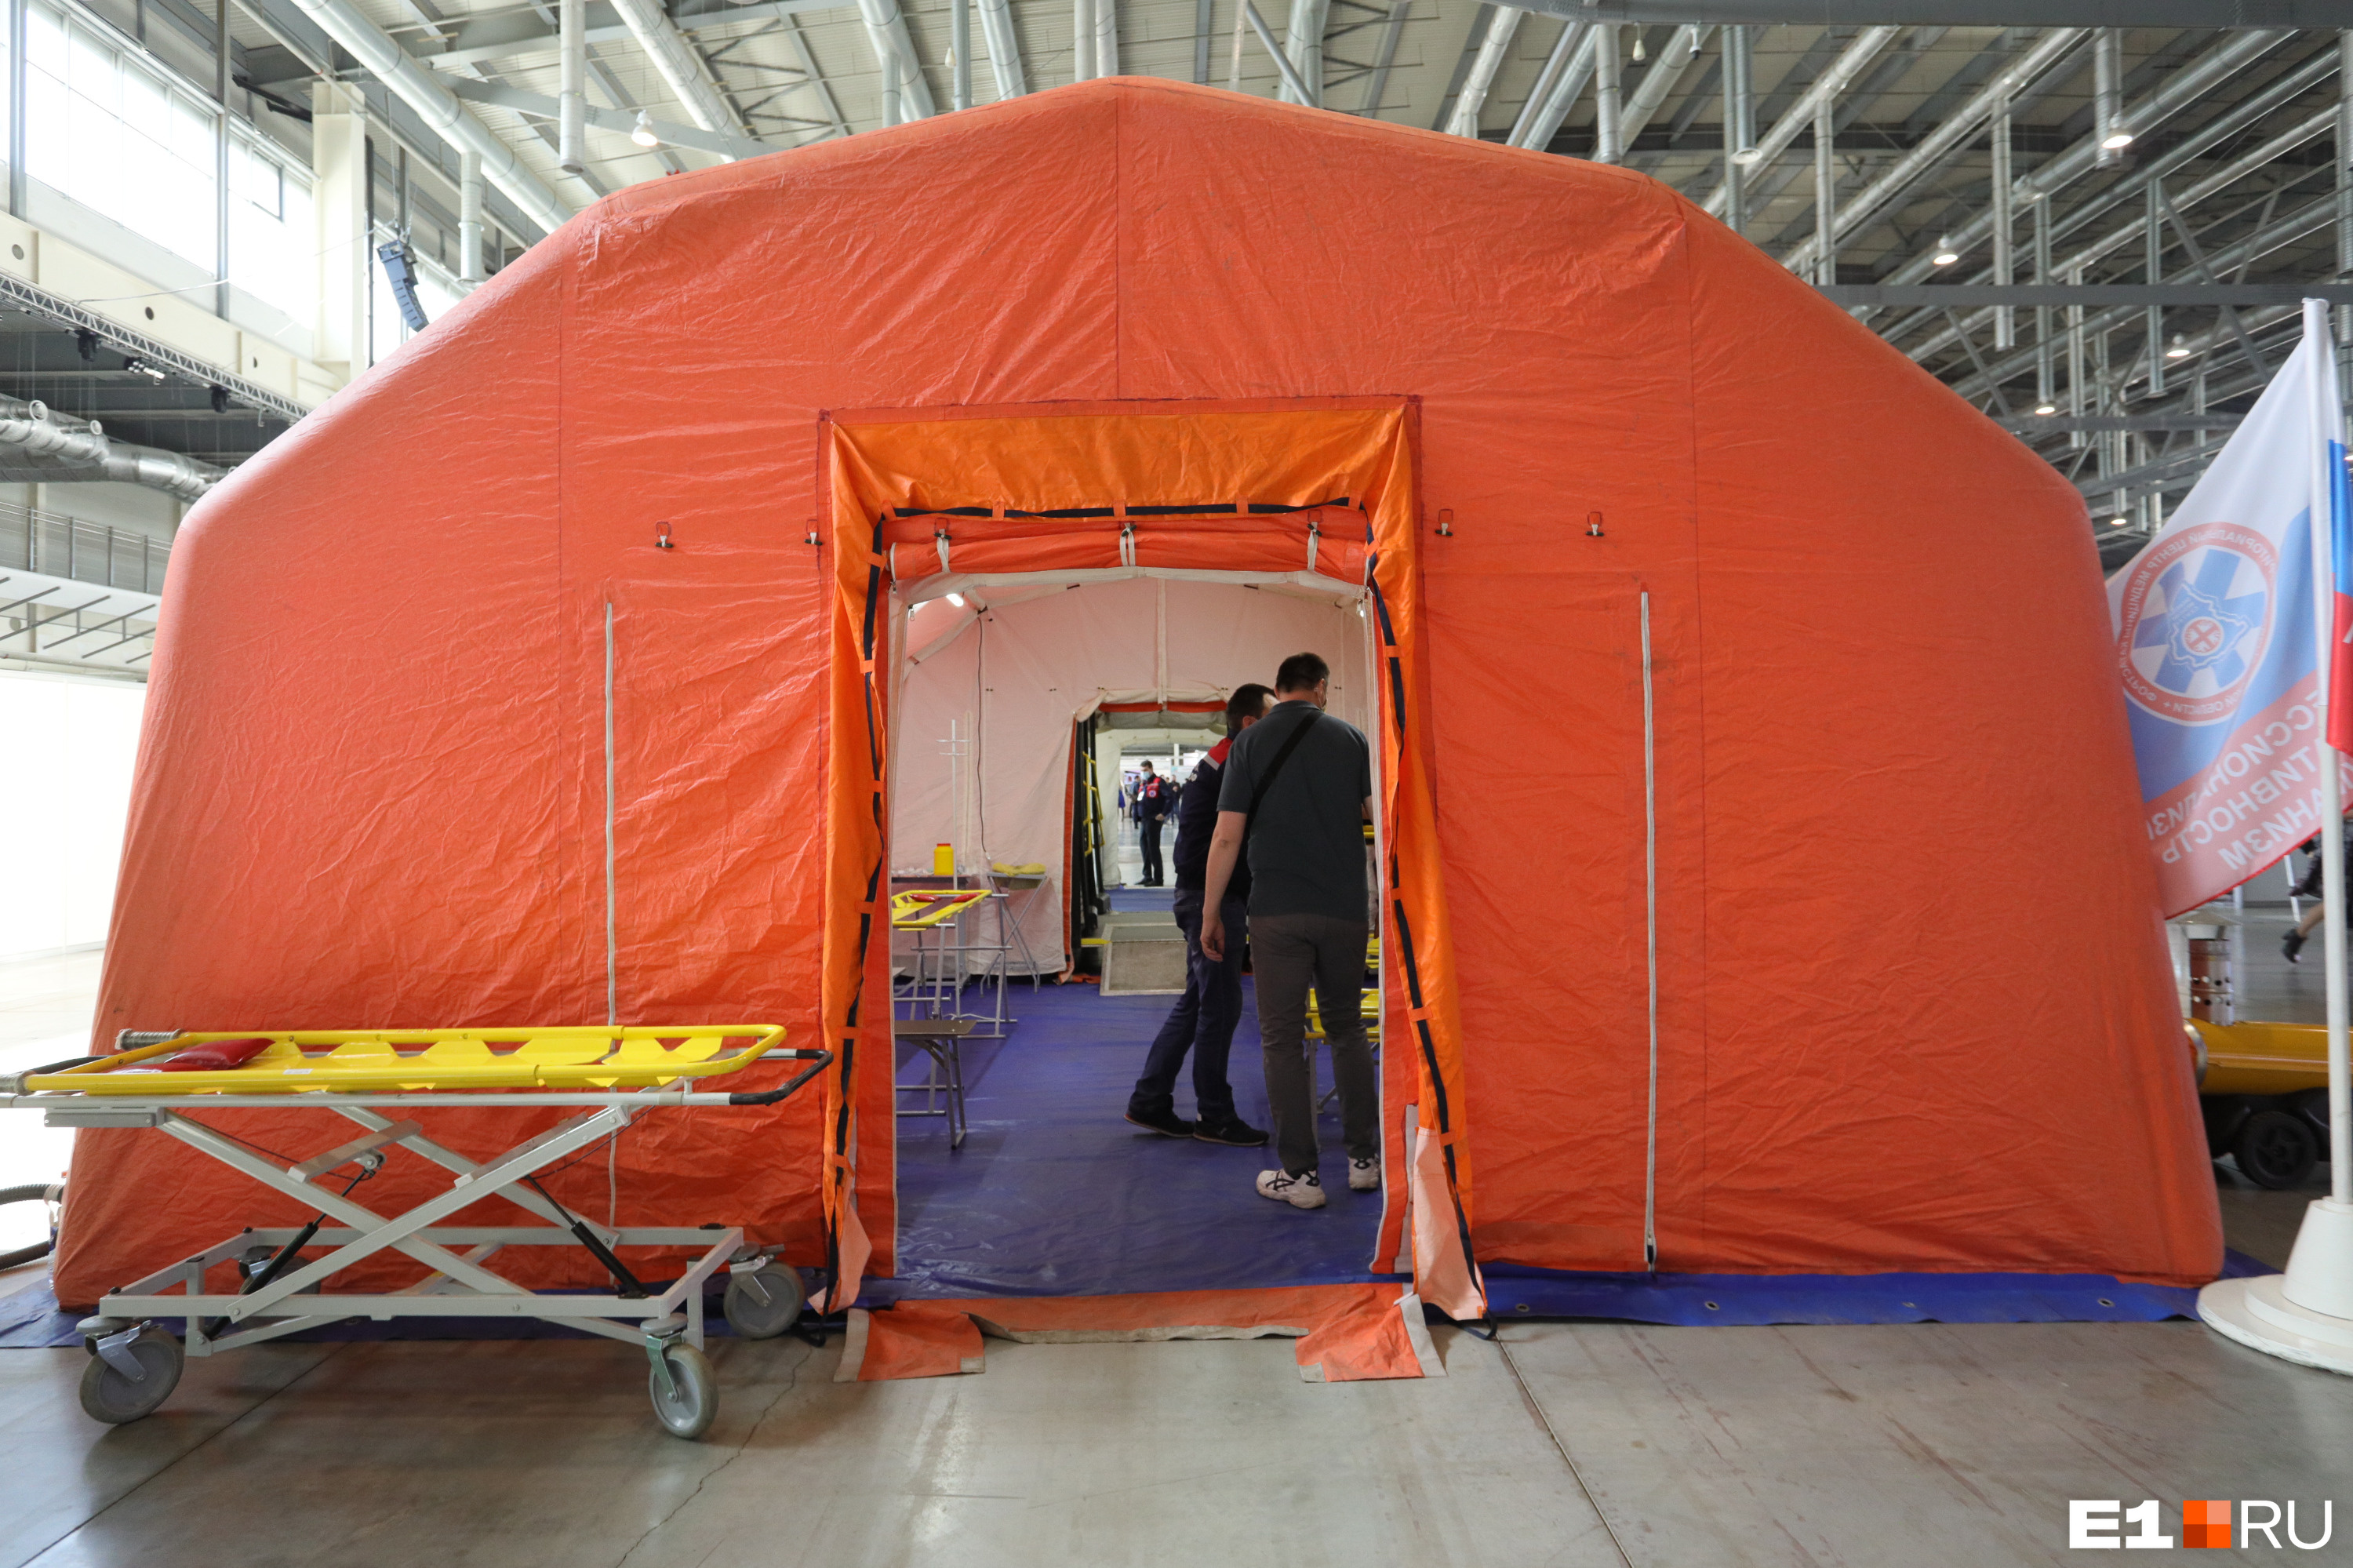 Также для чрезвычайных ситуаций и помощи на крупных массовых мероприятиях предусмотрена специальная палатка